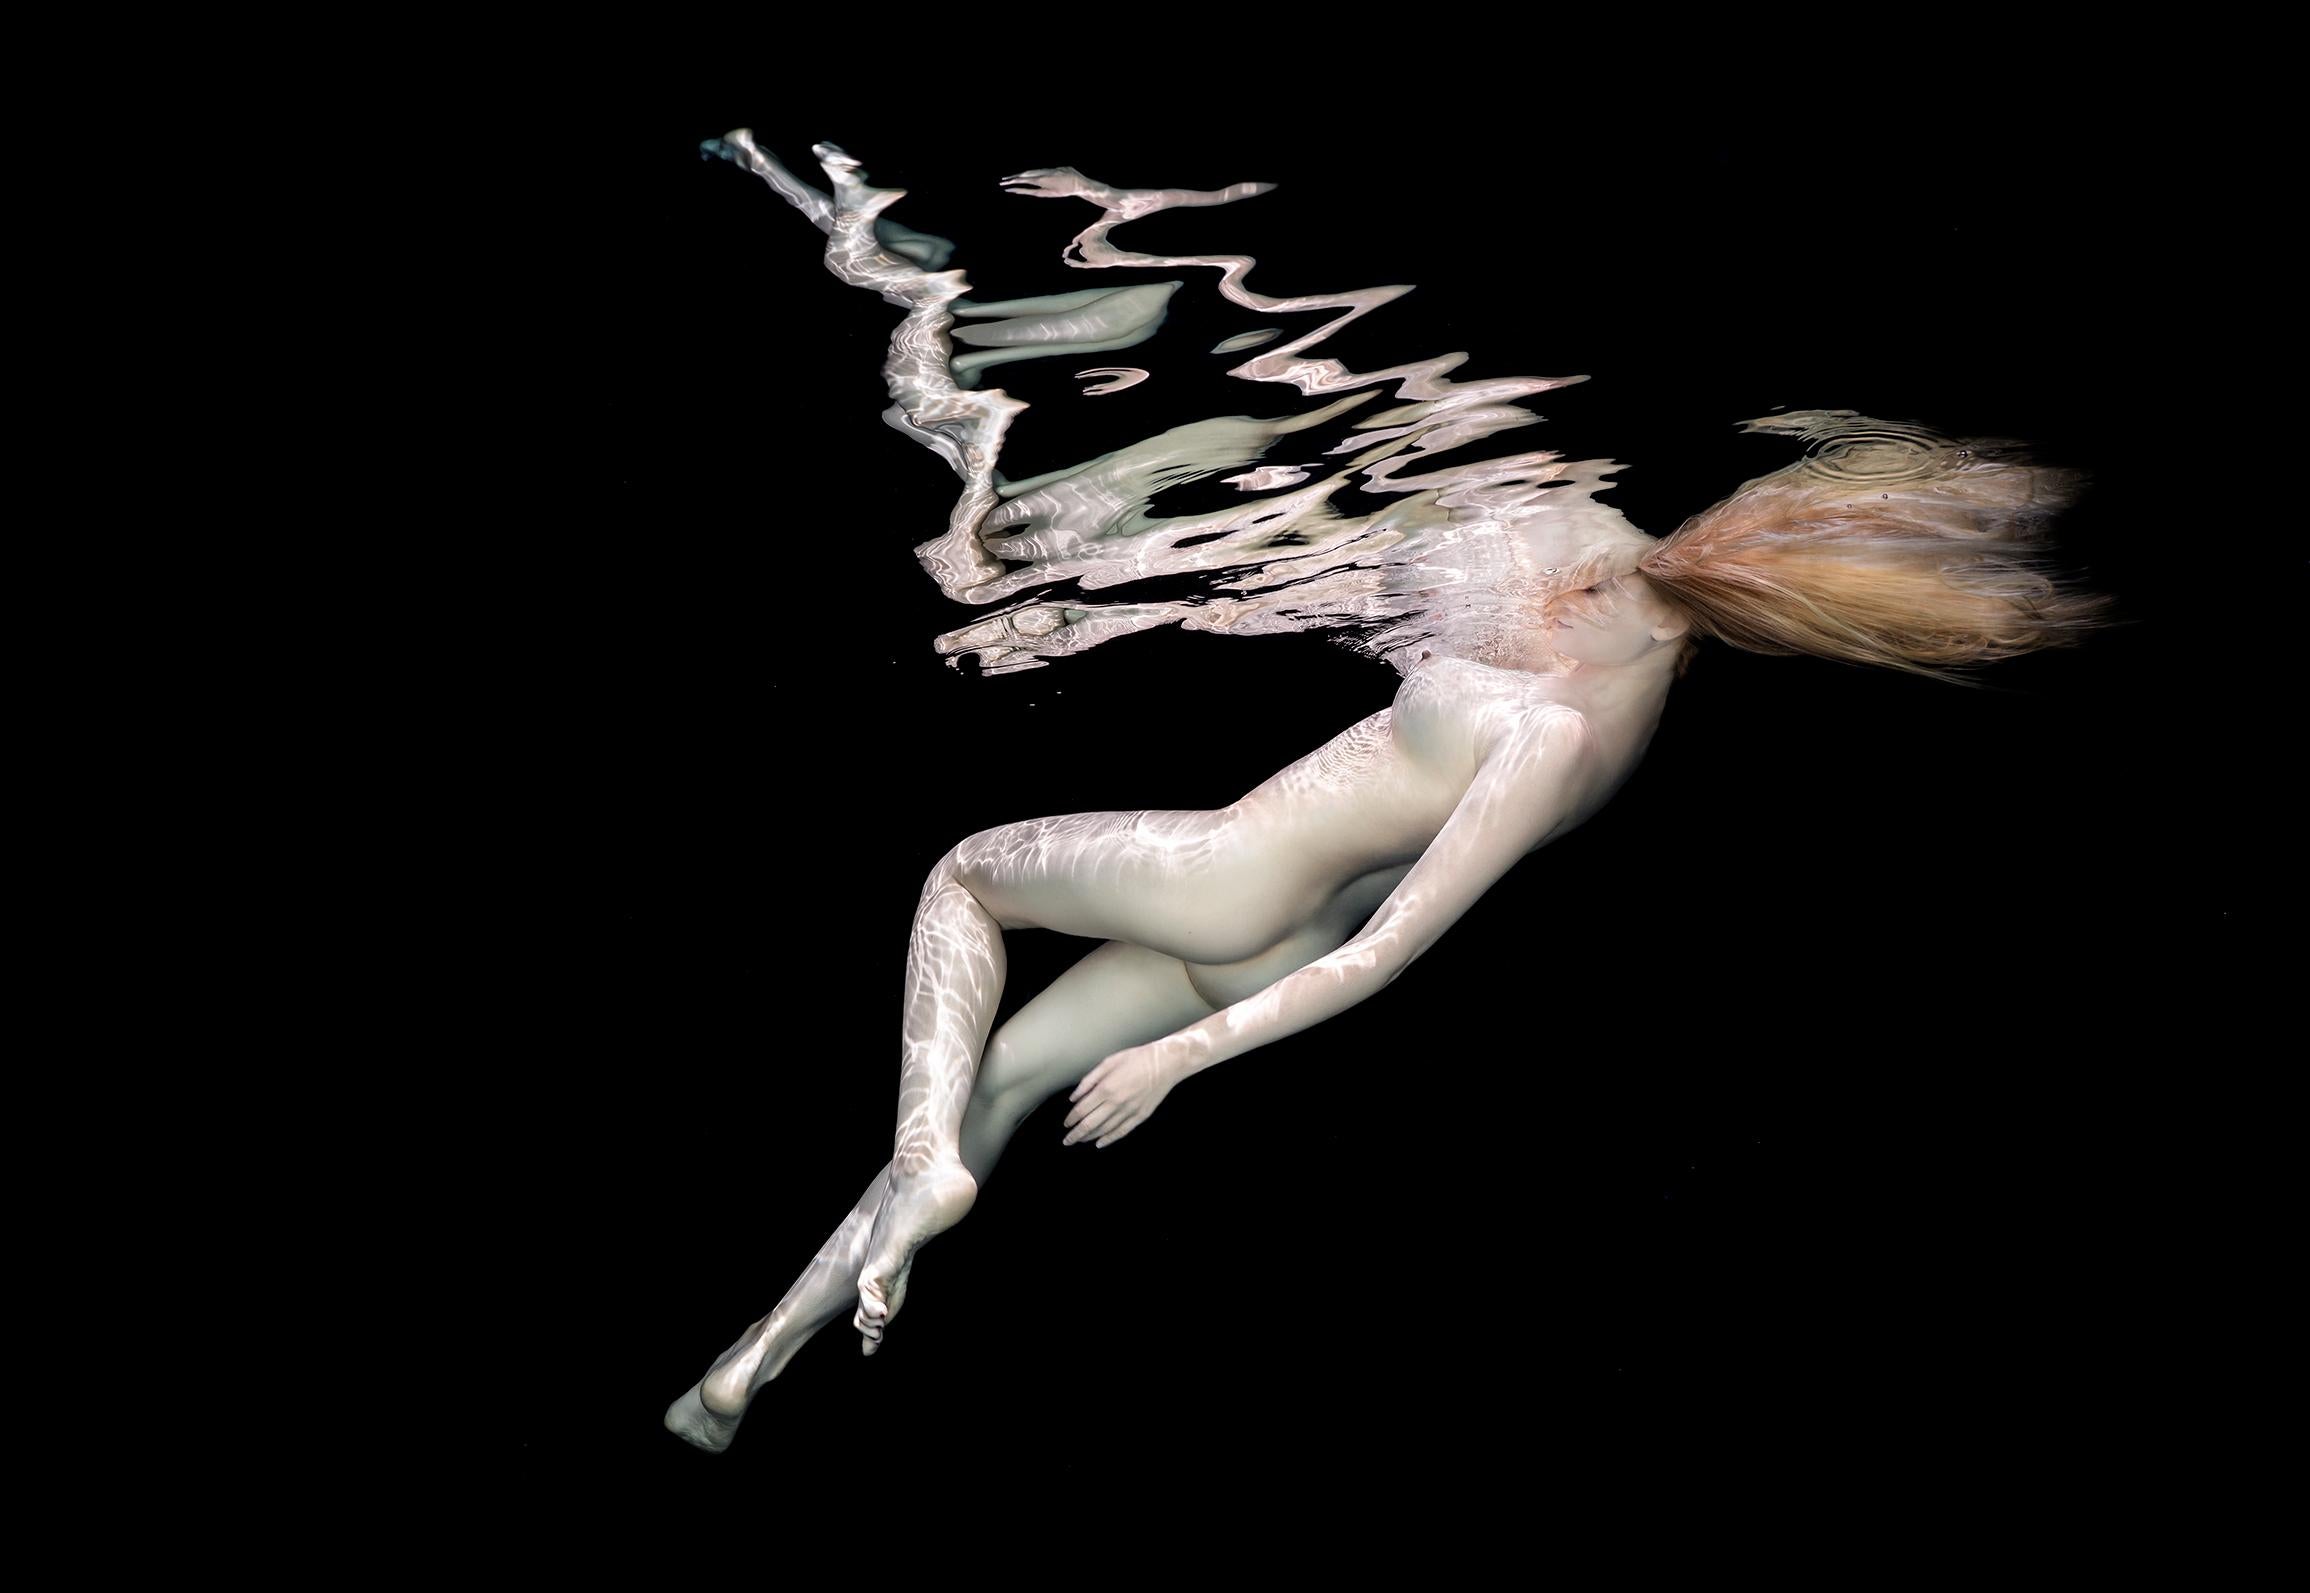 Alex Sher Nude Photograph – Porzellan III – Aktfotografie im Unterwasser – Archivalischer Pigmentdruck 43" x 64"